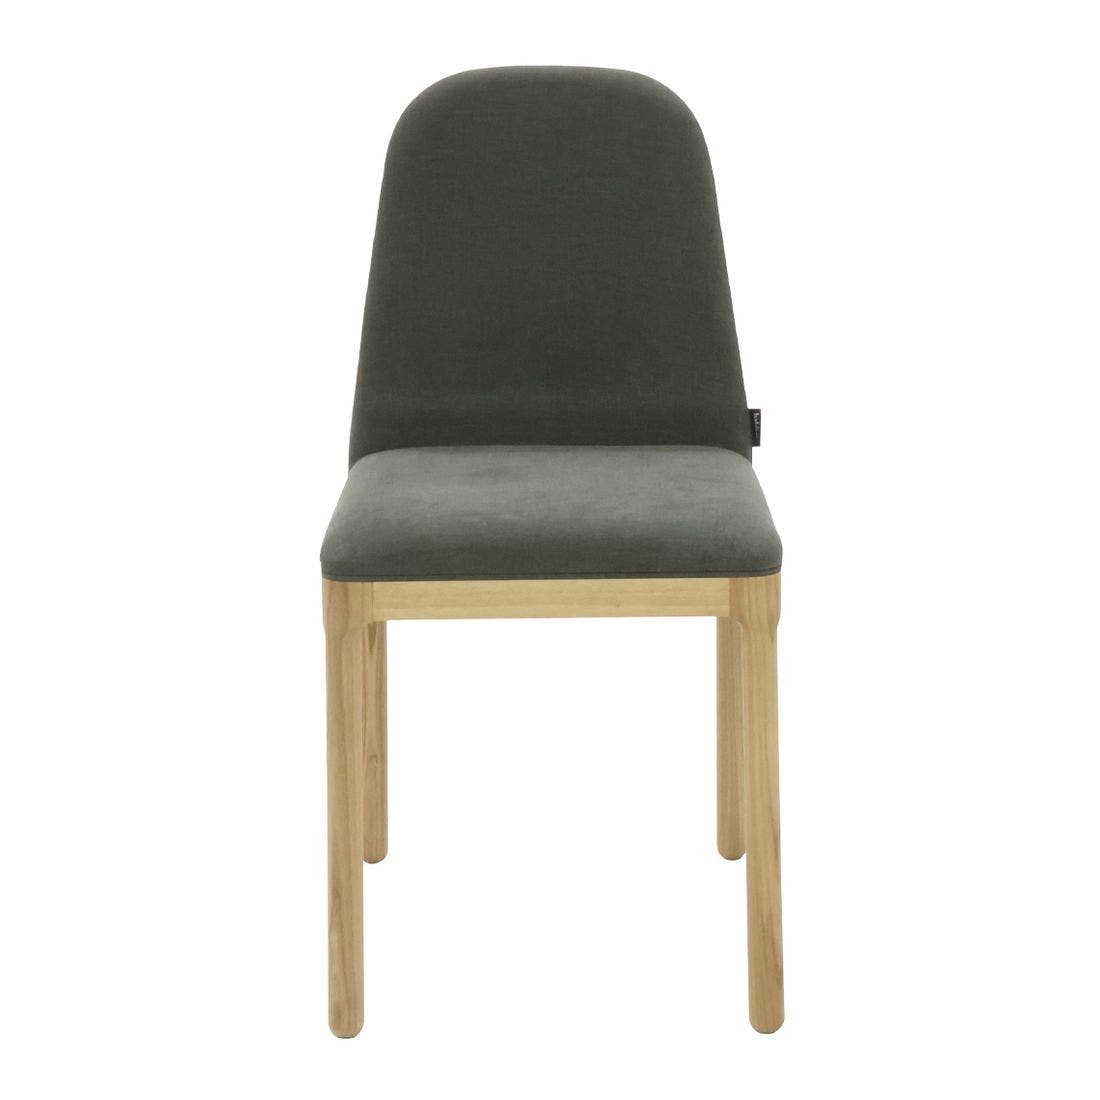 เก้าอี้ไม้แอชเบาะผ้า Habitat รุ่น Bet สีเทาเข้ม1